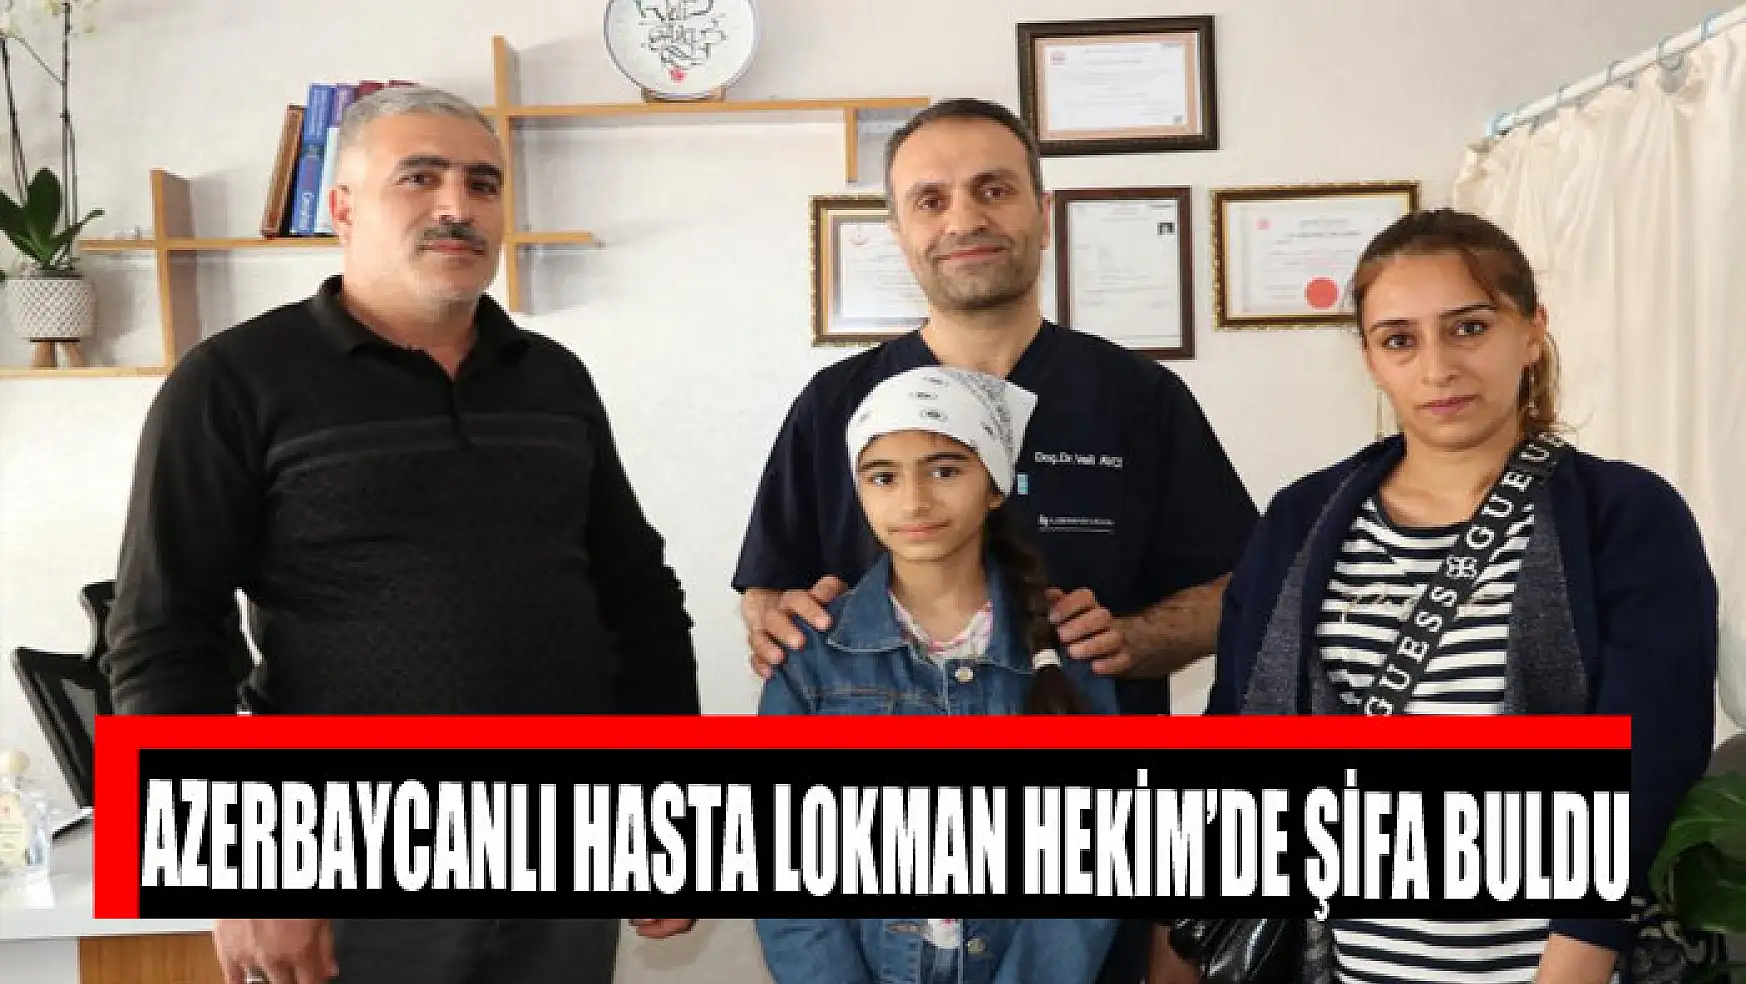 Azerbaycanlı hasta Lokman Hekim'de şifa buldu